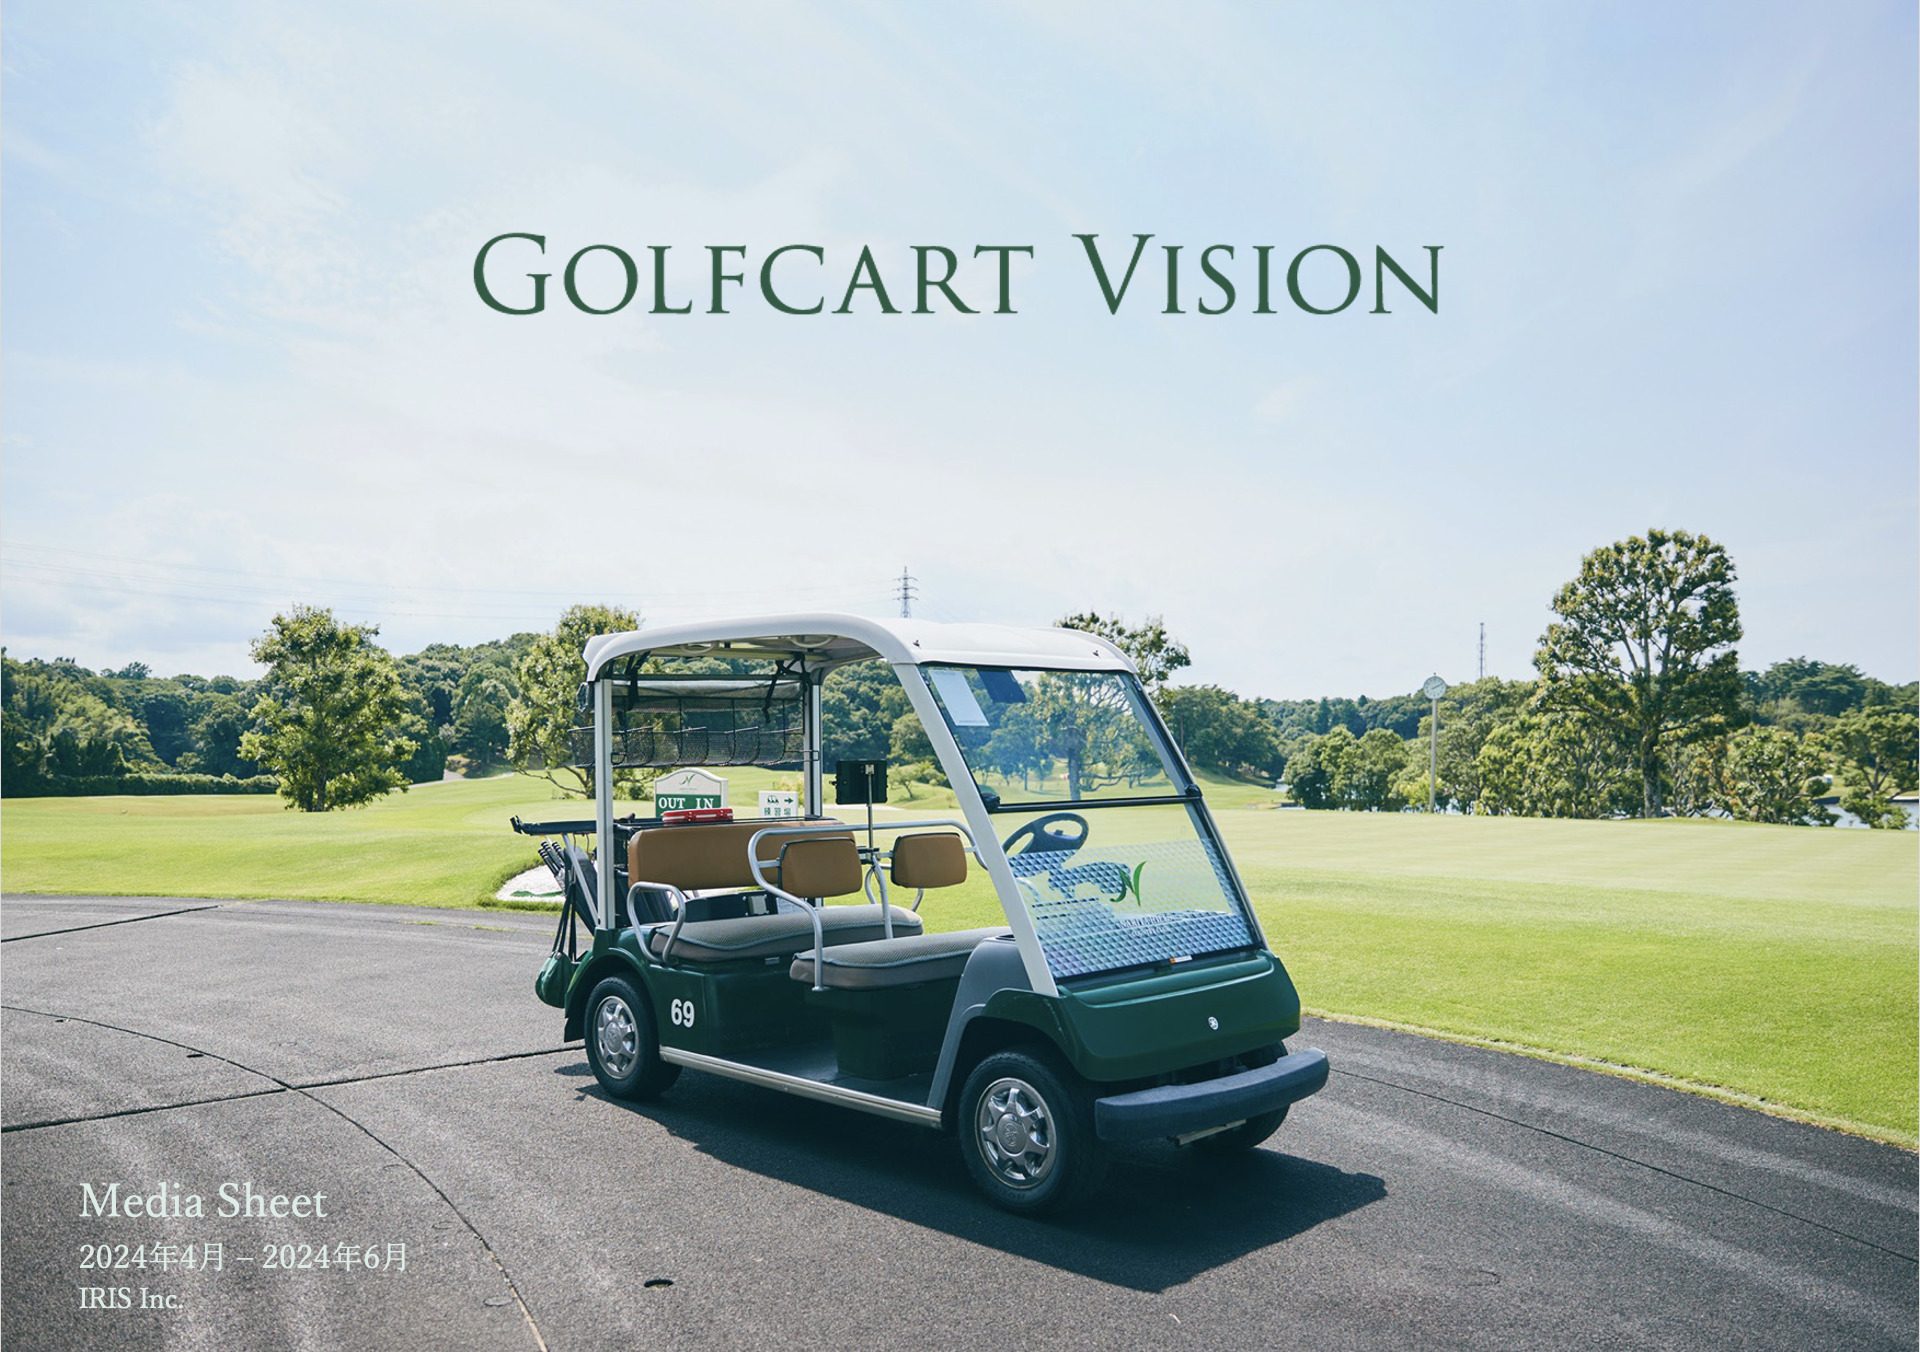 ゴルフカートサイネージメディア「Golfcart Vision®︎」、57ゴルフ場・約3,600台へとさらに規模を拡大！〜2024年4月-2024年6月媒体資料を公開〜